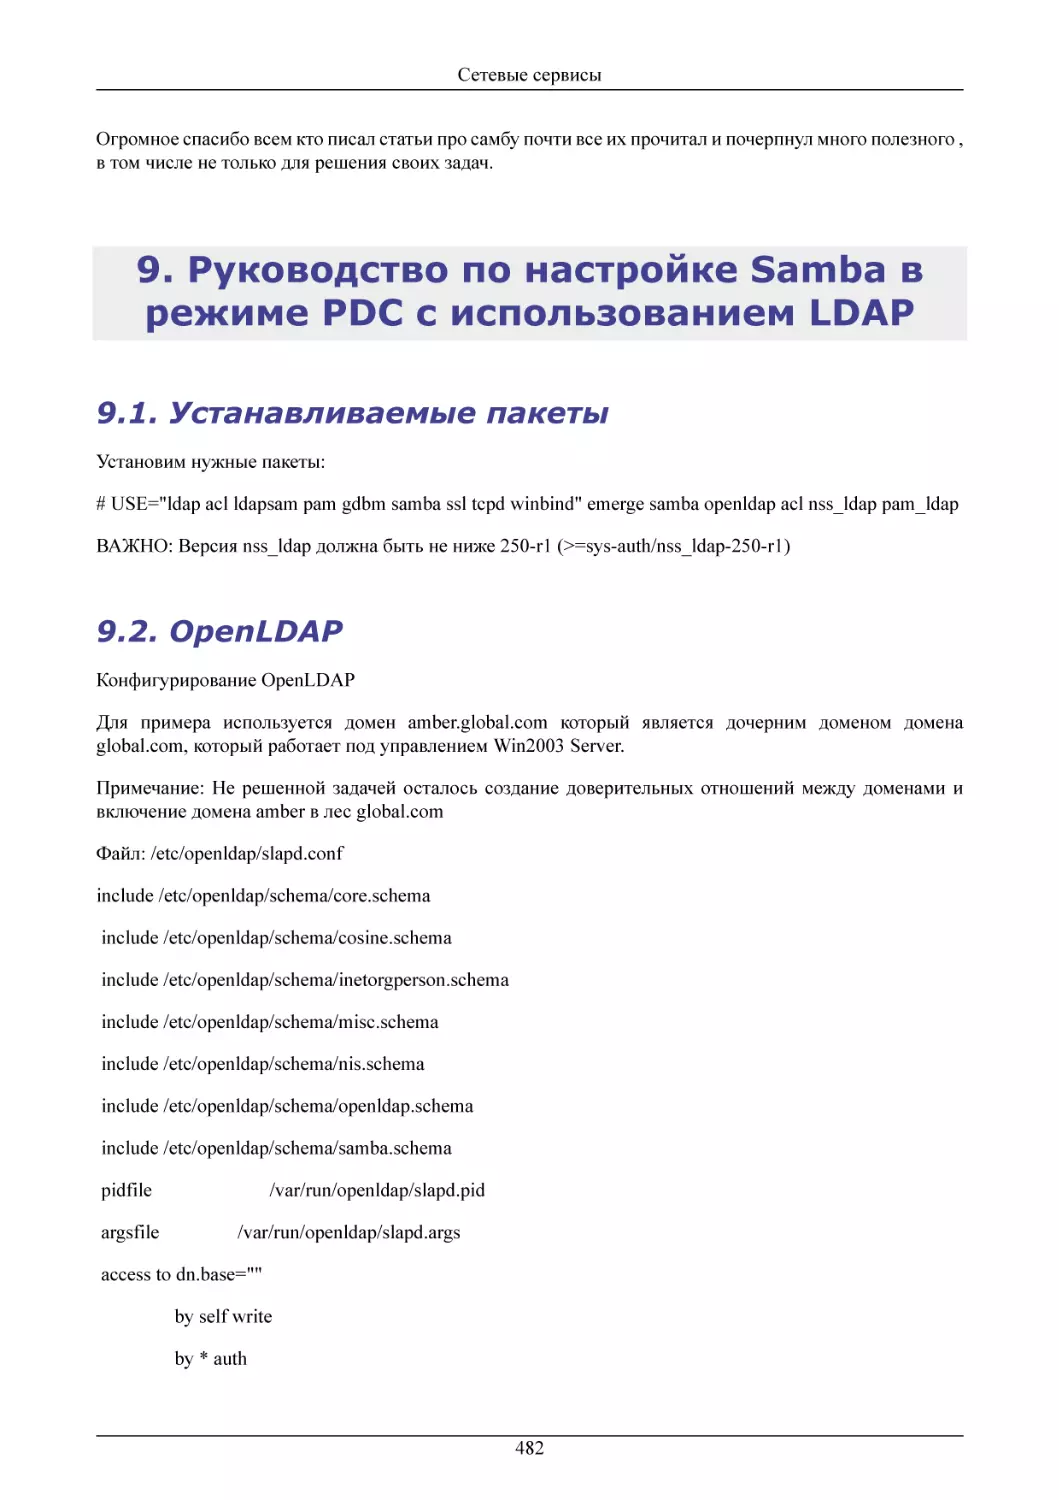 Руководство по настройке Samba в режиме PDC с
Устанавливаемые пакеты
OpenLDAP